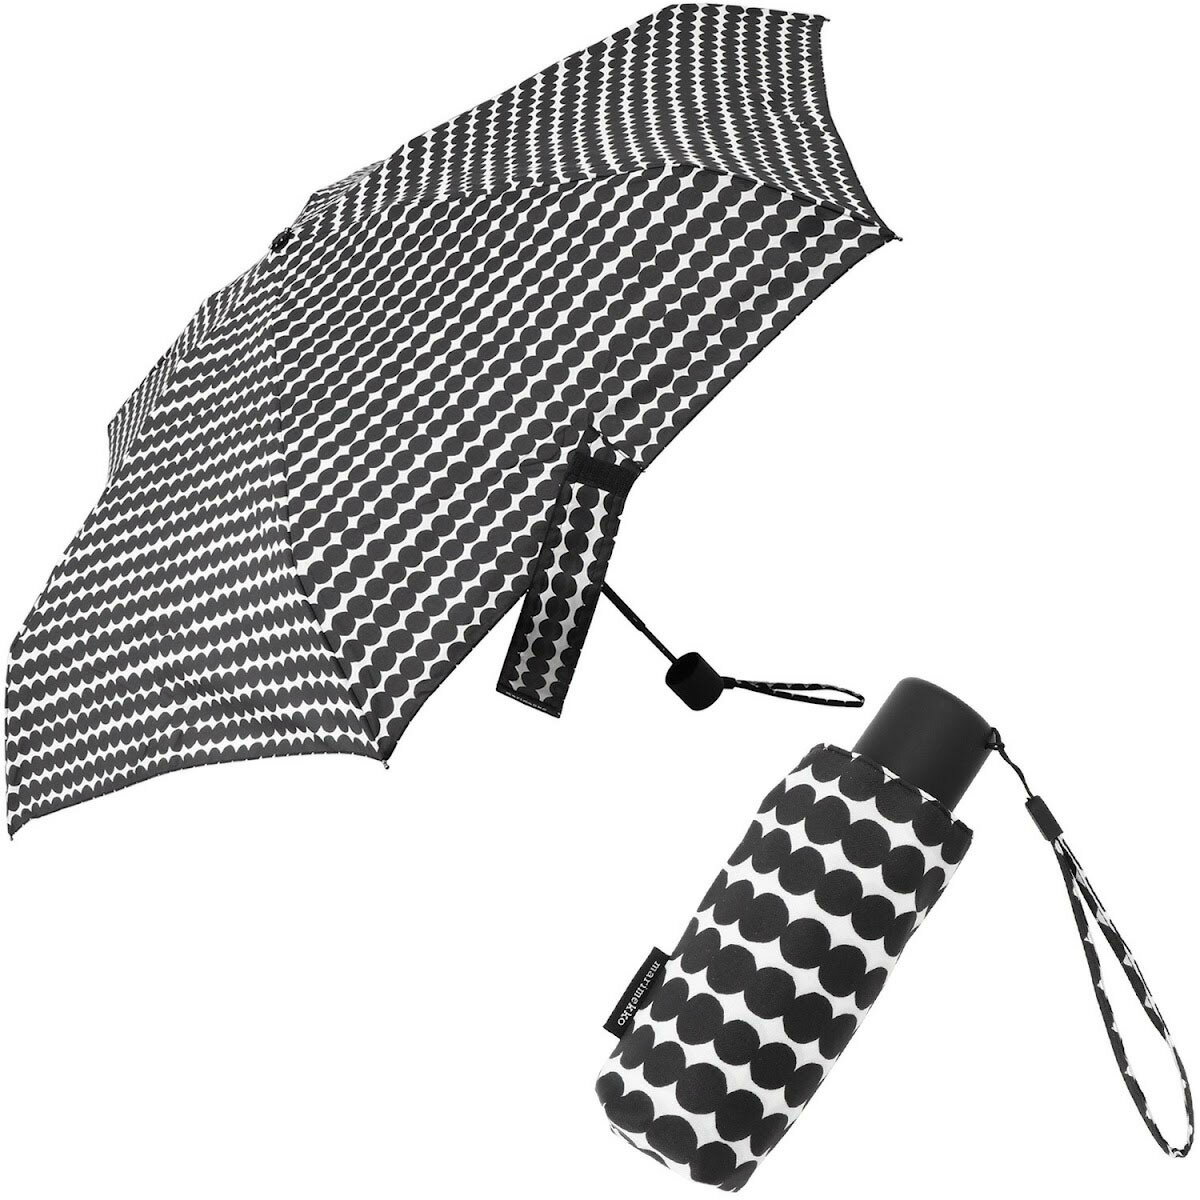 マリメッコ  マリメッコ marimekko 折りたたみ傘 傘 雨傘 折り畳み 048860 190 ummm00103l MINI MANUAL UMBRELLA ミニ マニュアル アンブレラ Rasymatto ホワイト+ブラック 北欧